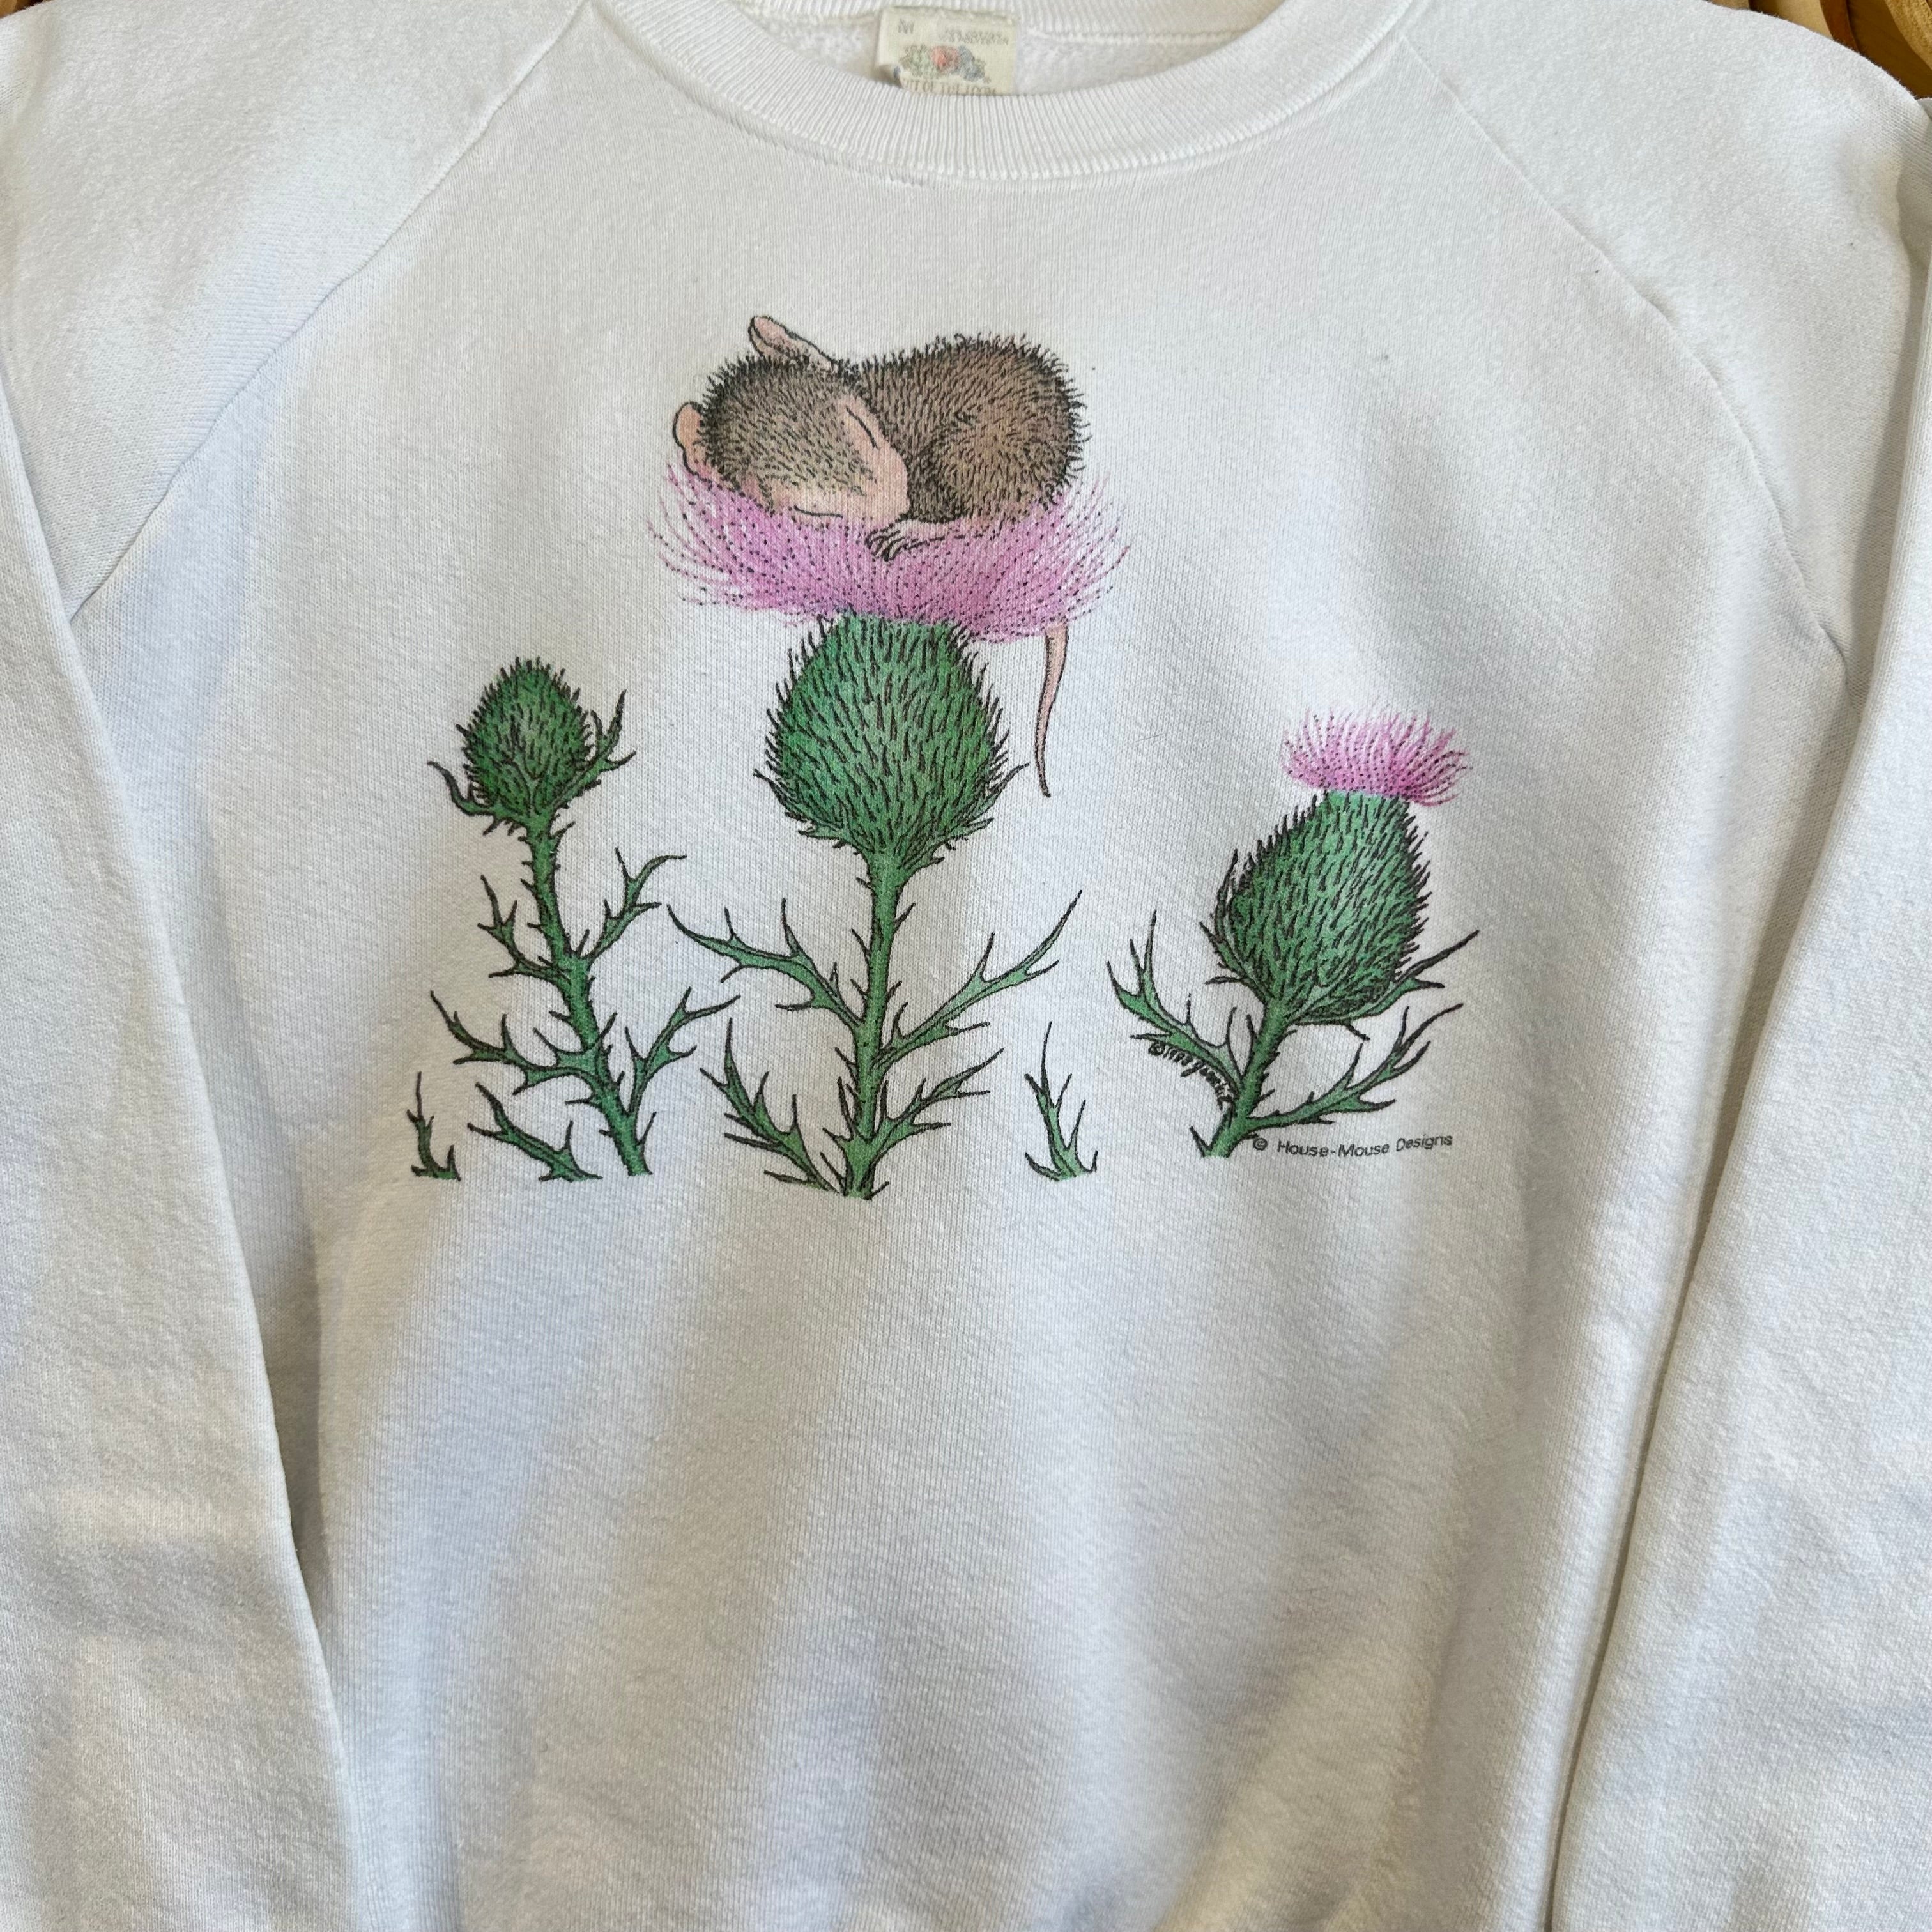 Sleepy Flower Mouse Crewneck Sweatshirt